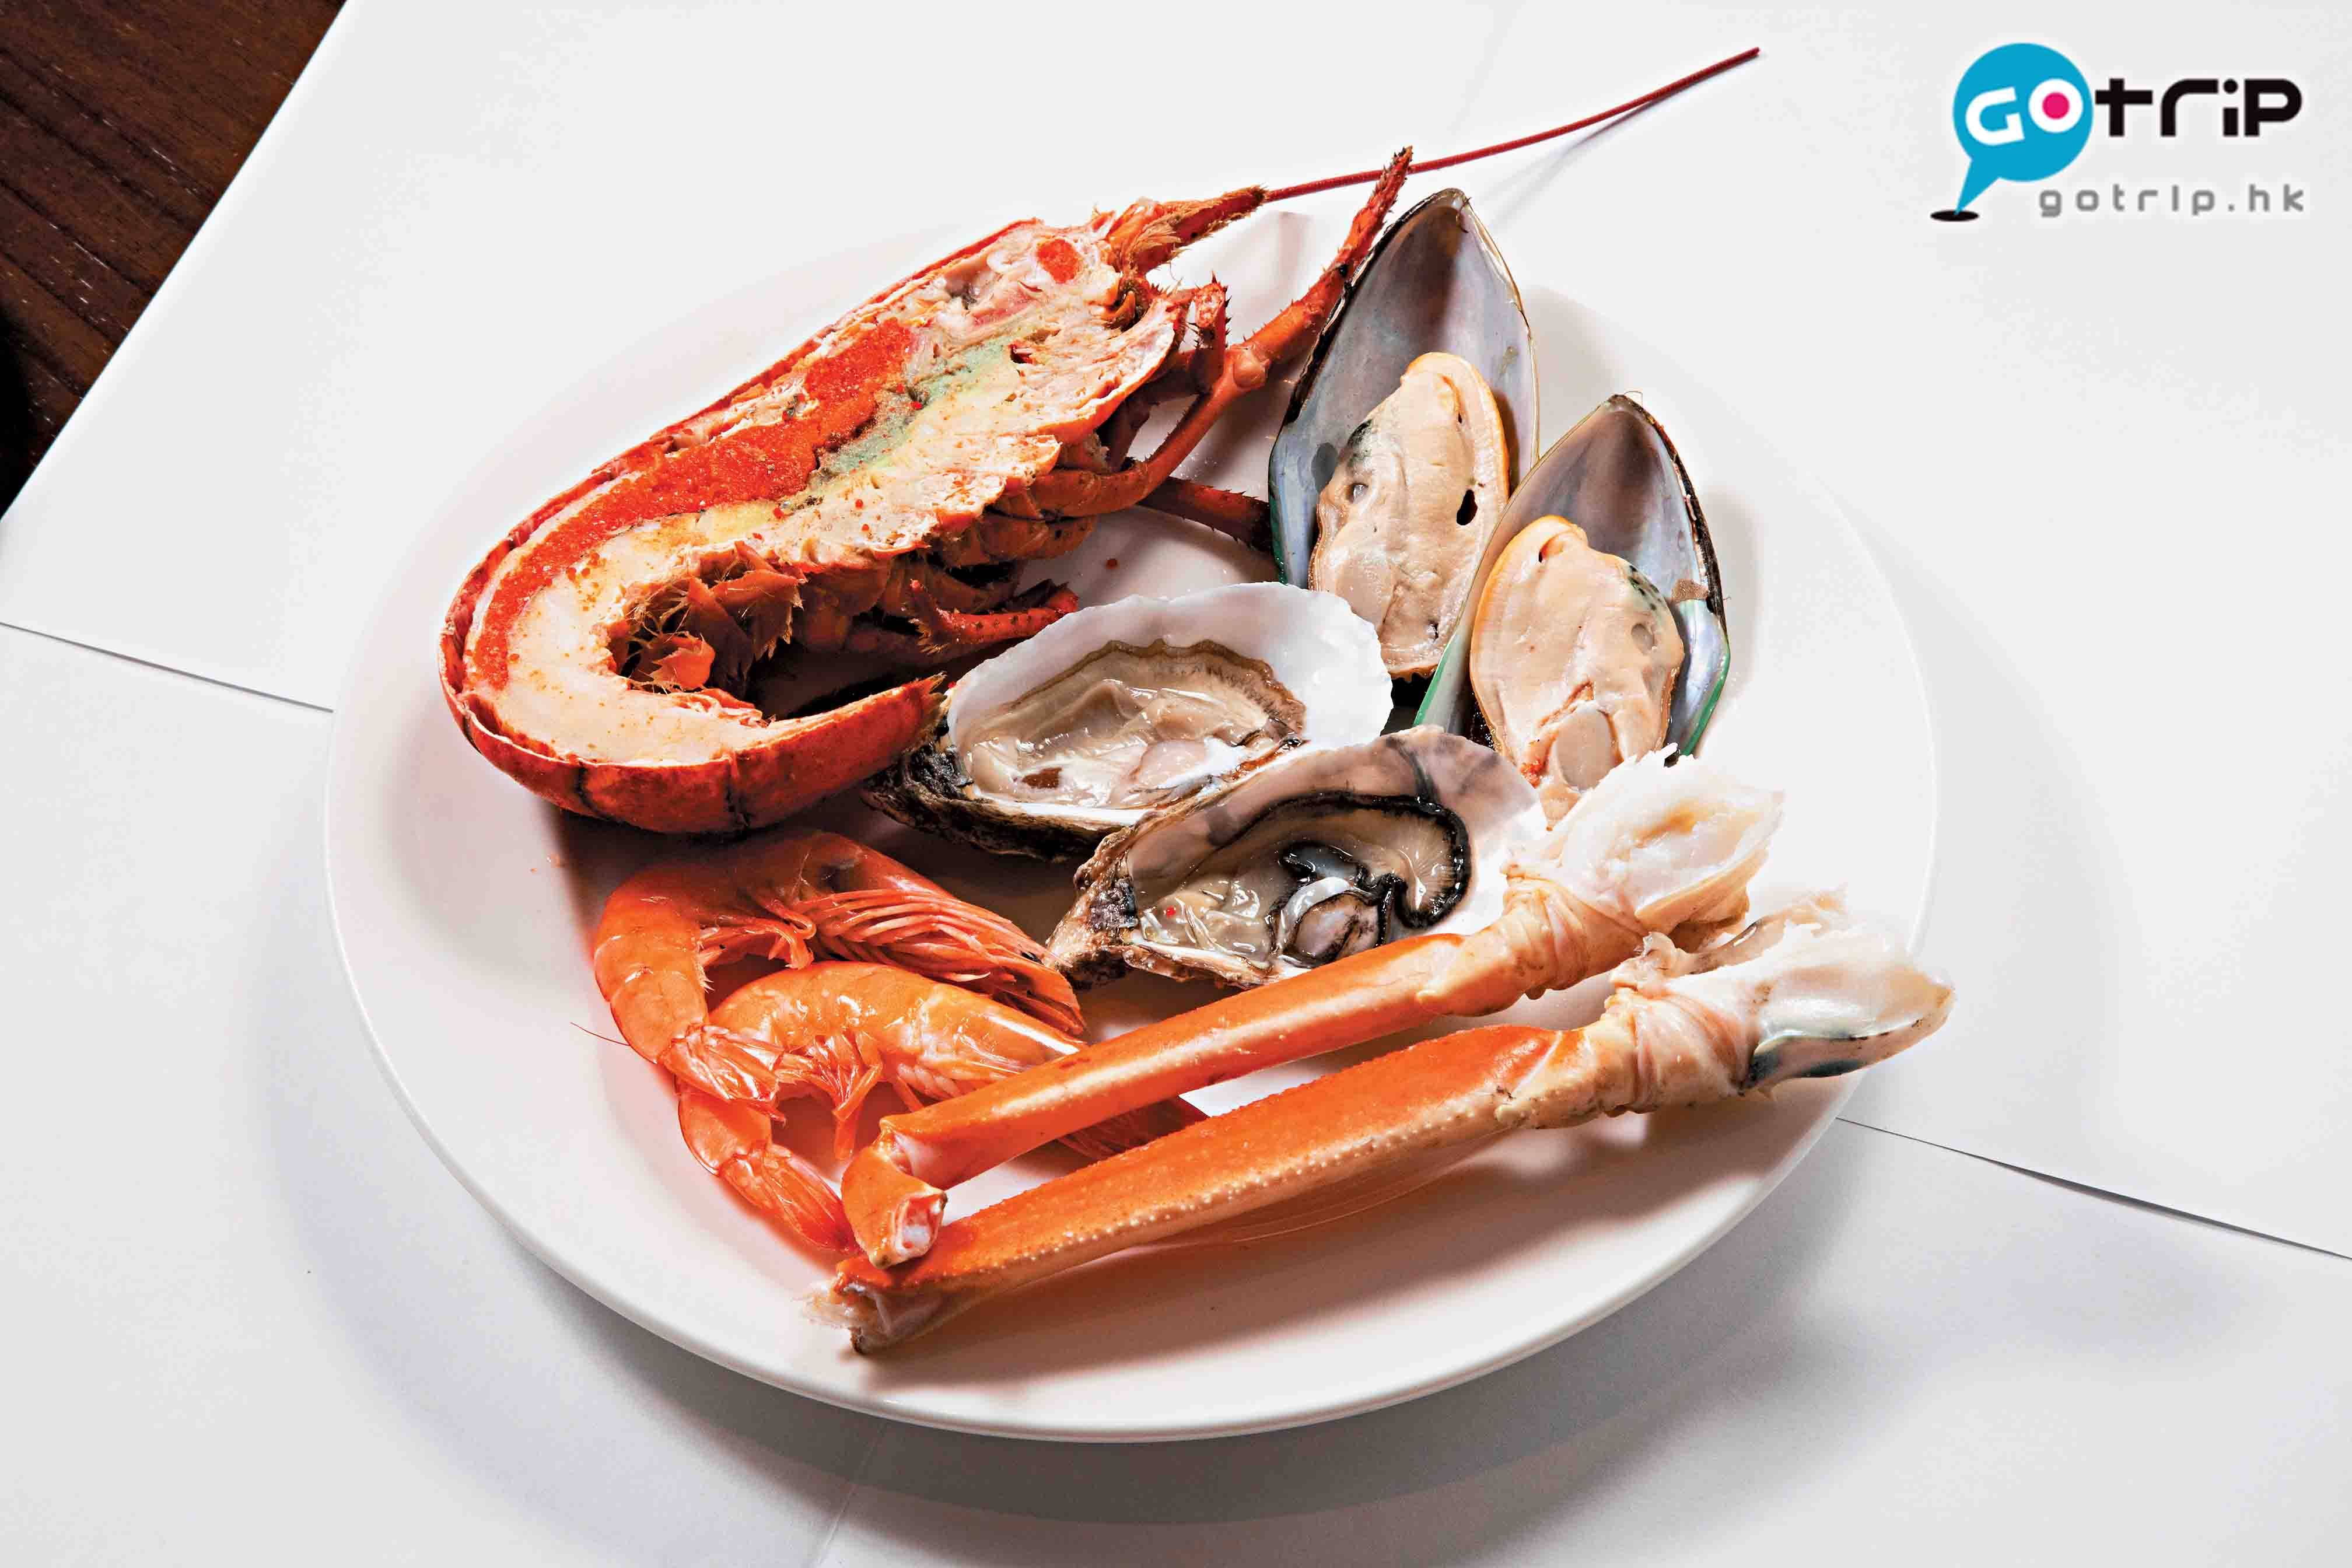 澳門自助餐2019 海鮮有法國生蠔、加拿大鱈蟹腳、波士頓龍蝦、南美熟蝦和加拿大青口。